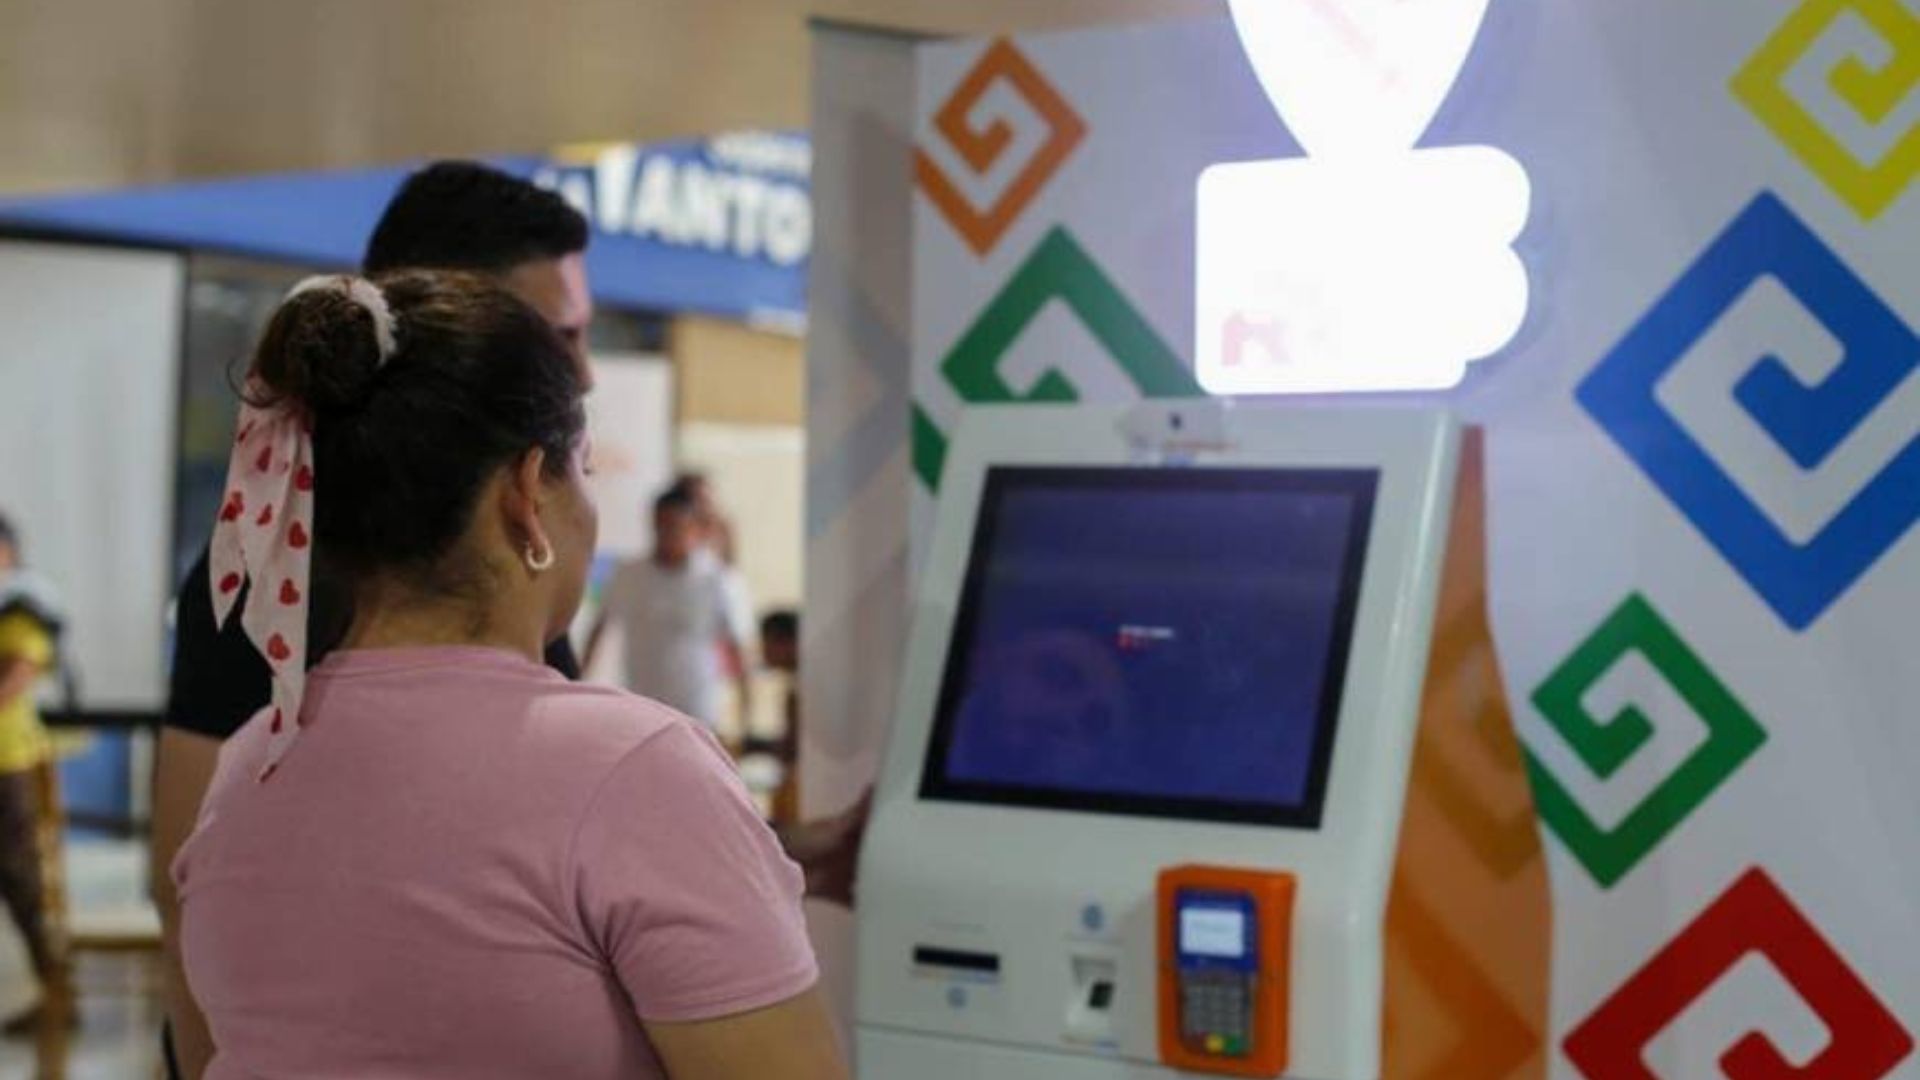 El Registro Nacional de las Personas en Honduras instaló varios ATM, (siglas en inglés que corresponden a cajero automático).